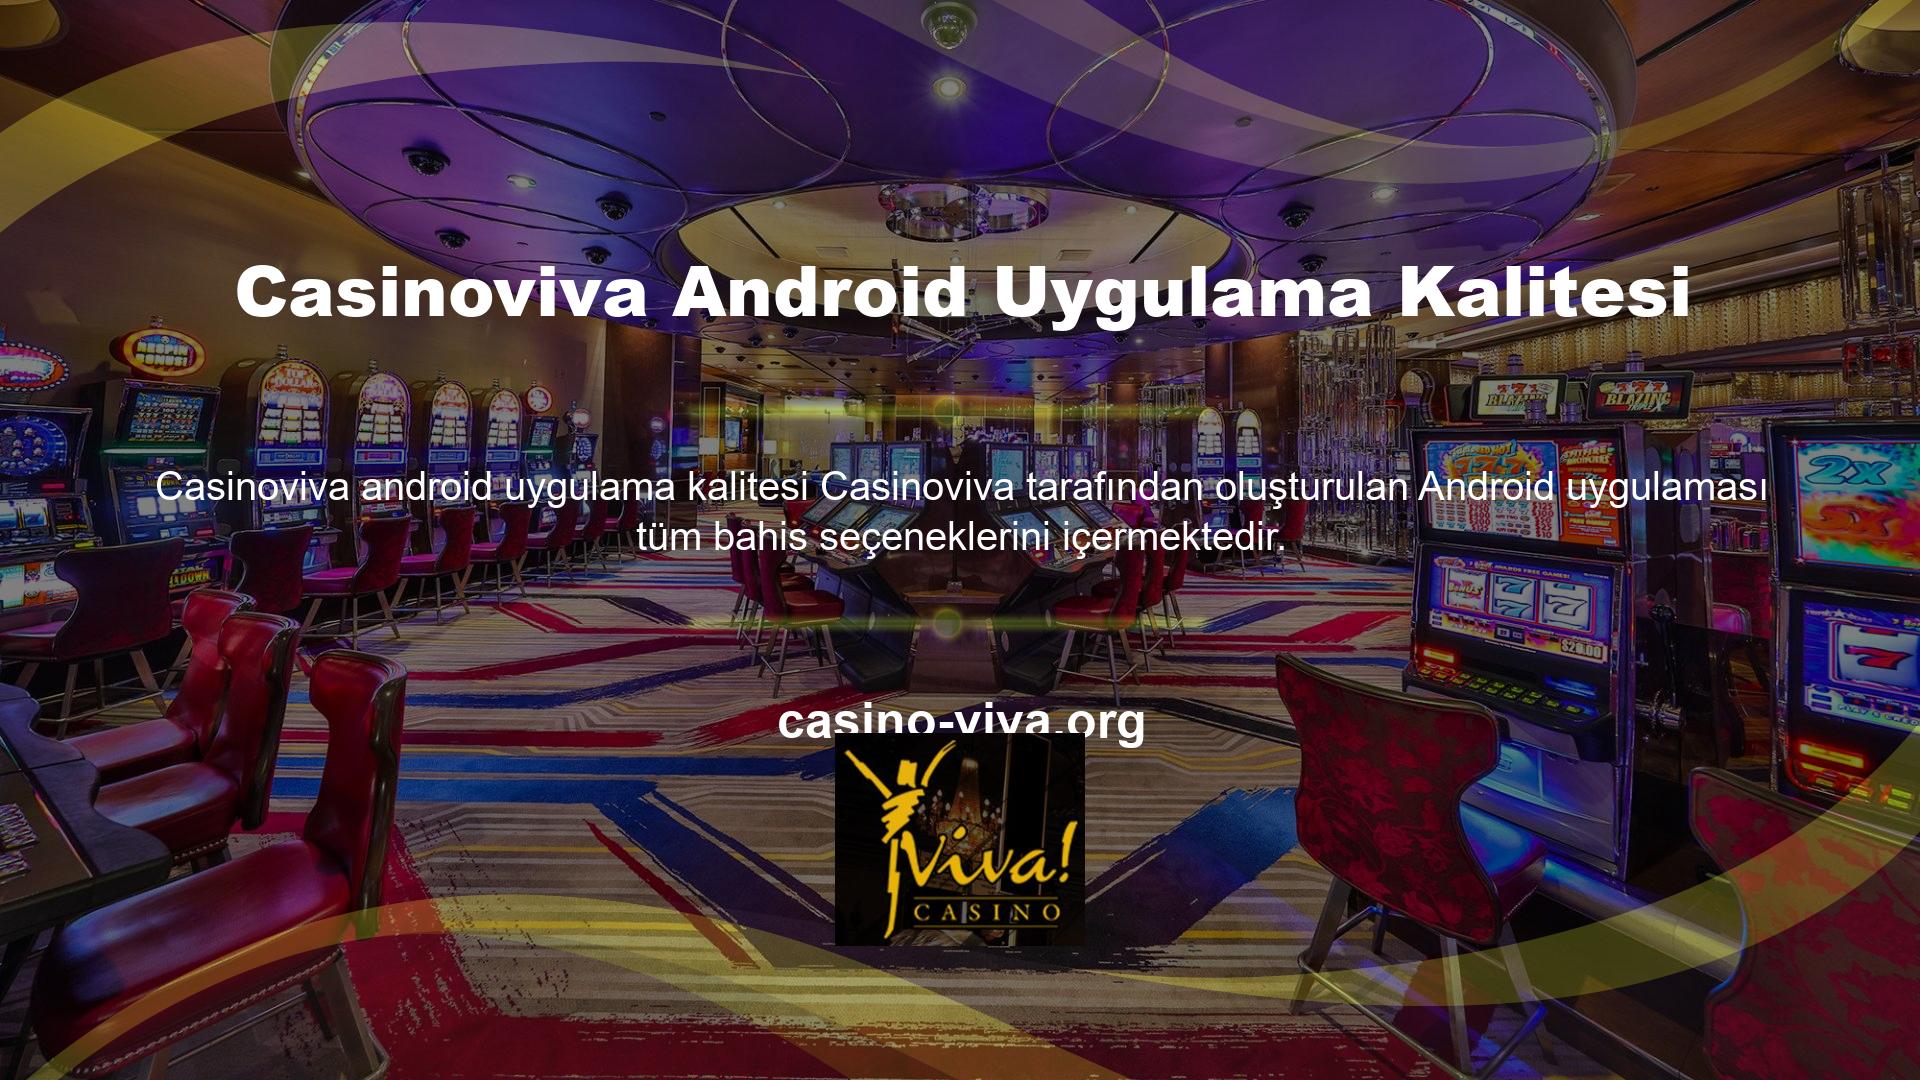 Casinoviva android uygulama kalitesi